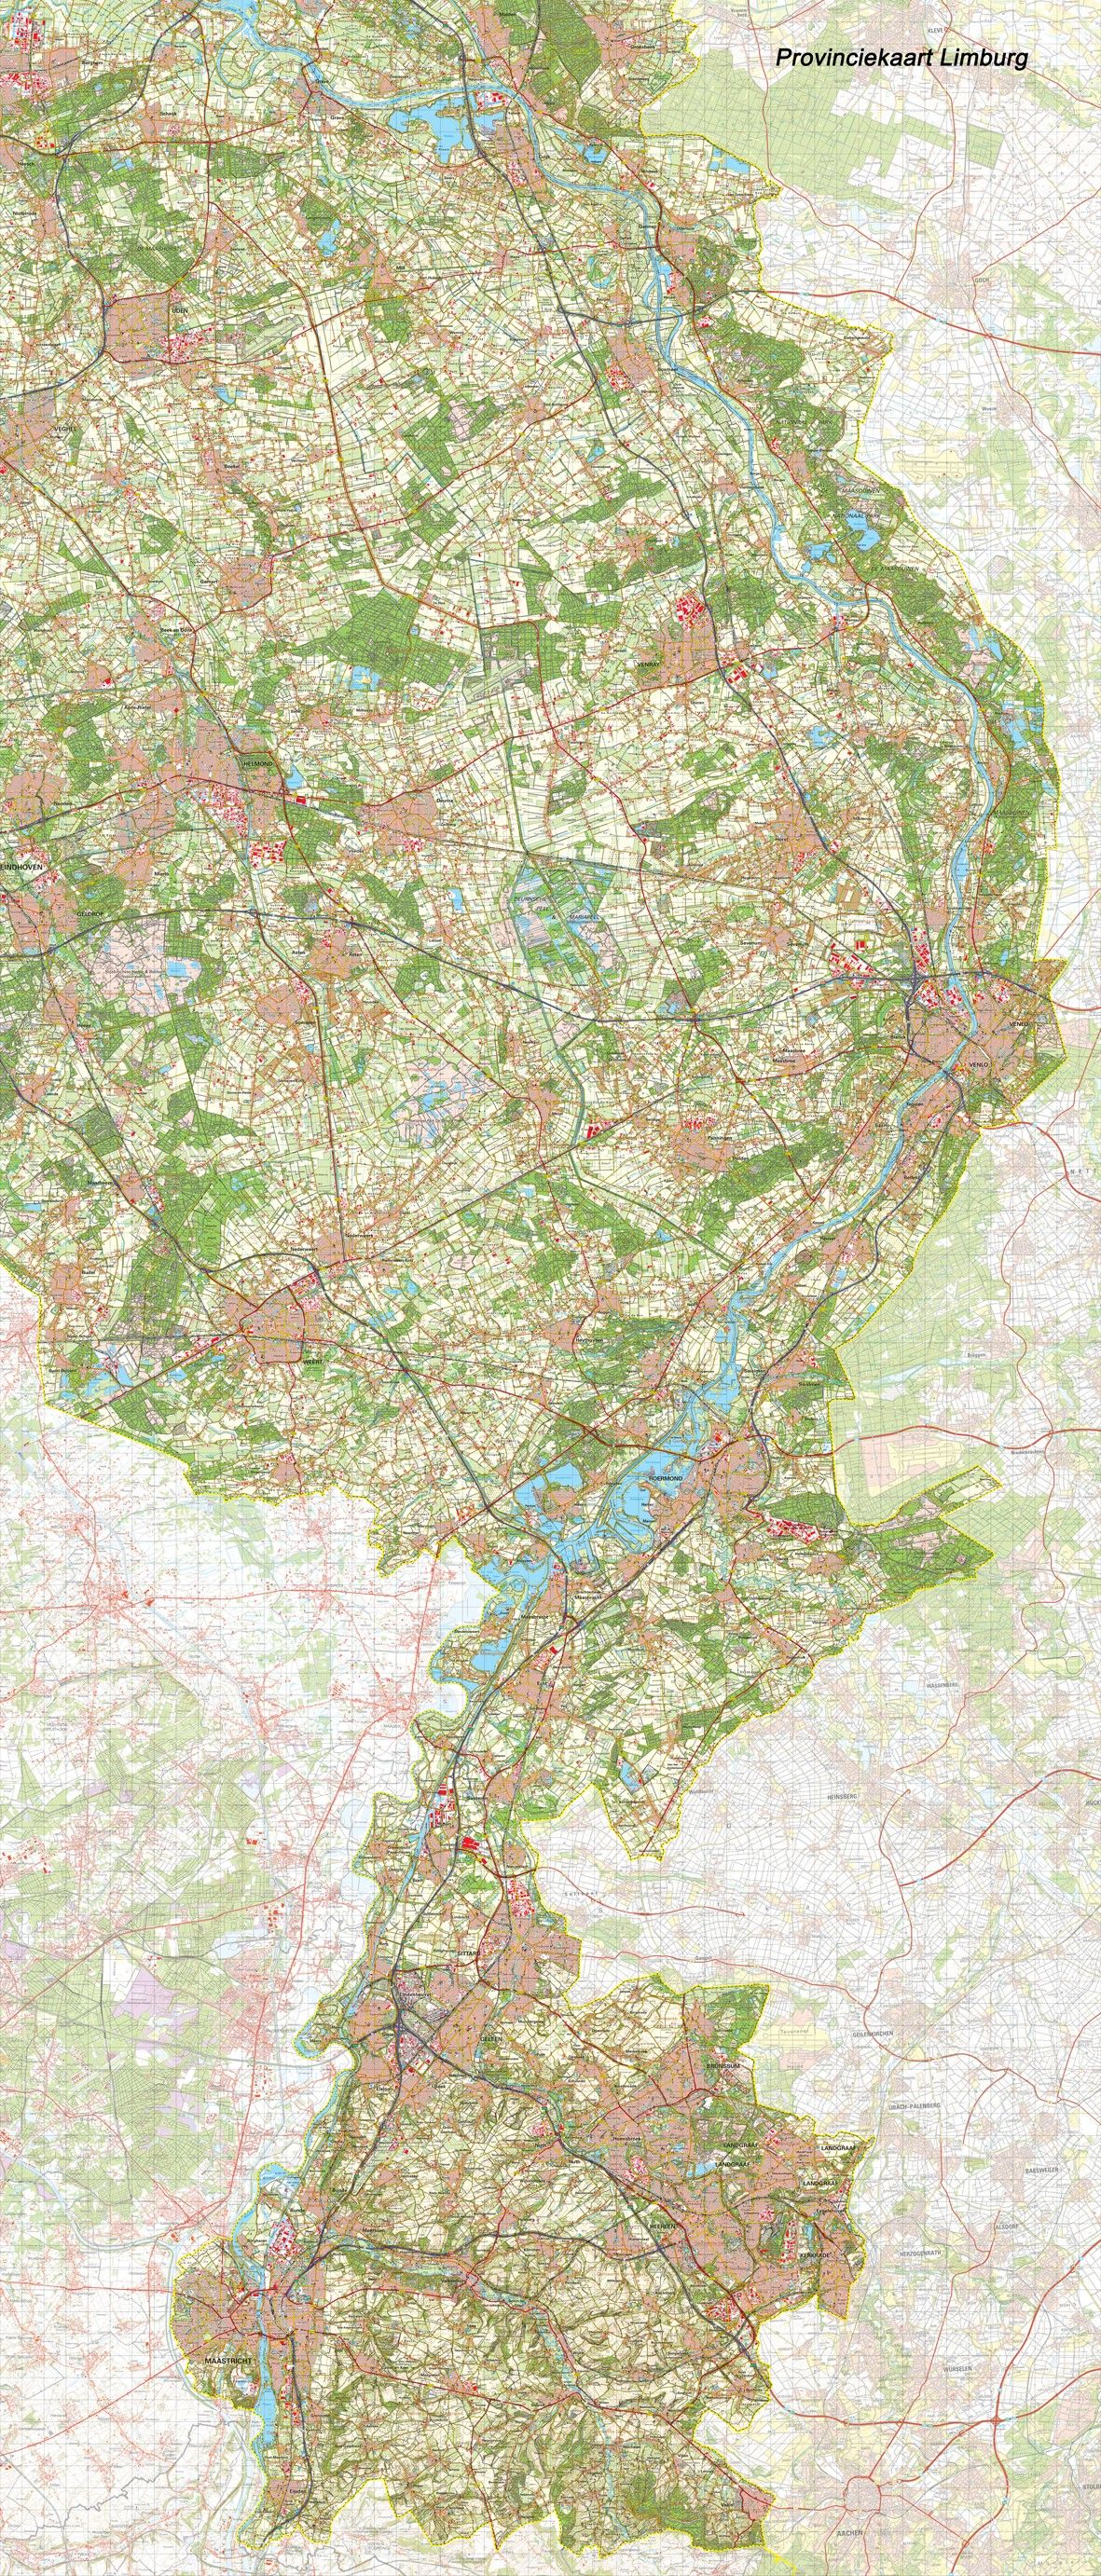 Provincie kaart Limburg schaal 1:50.000